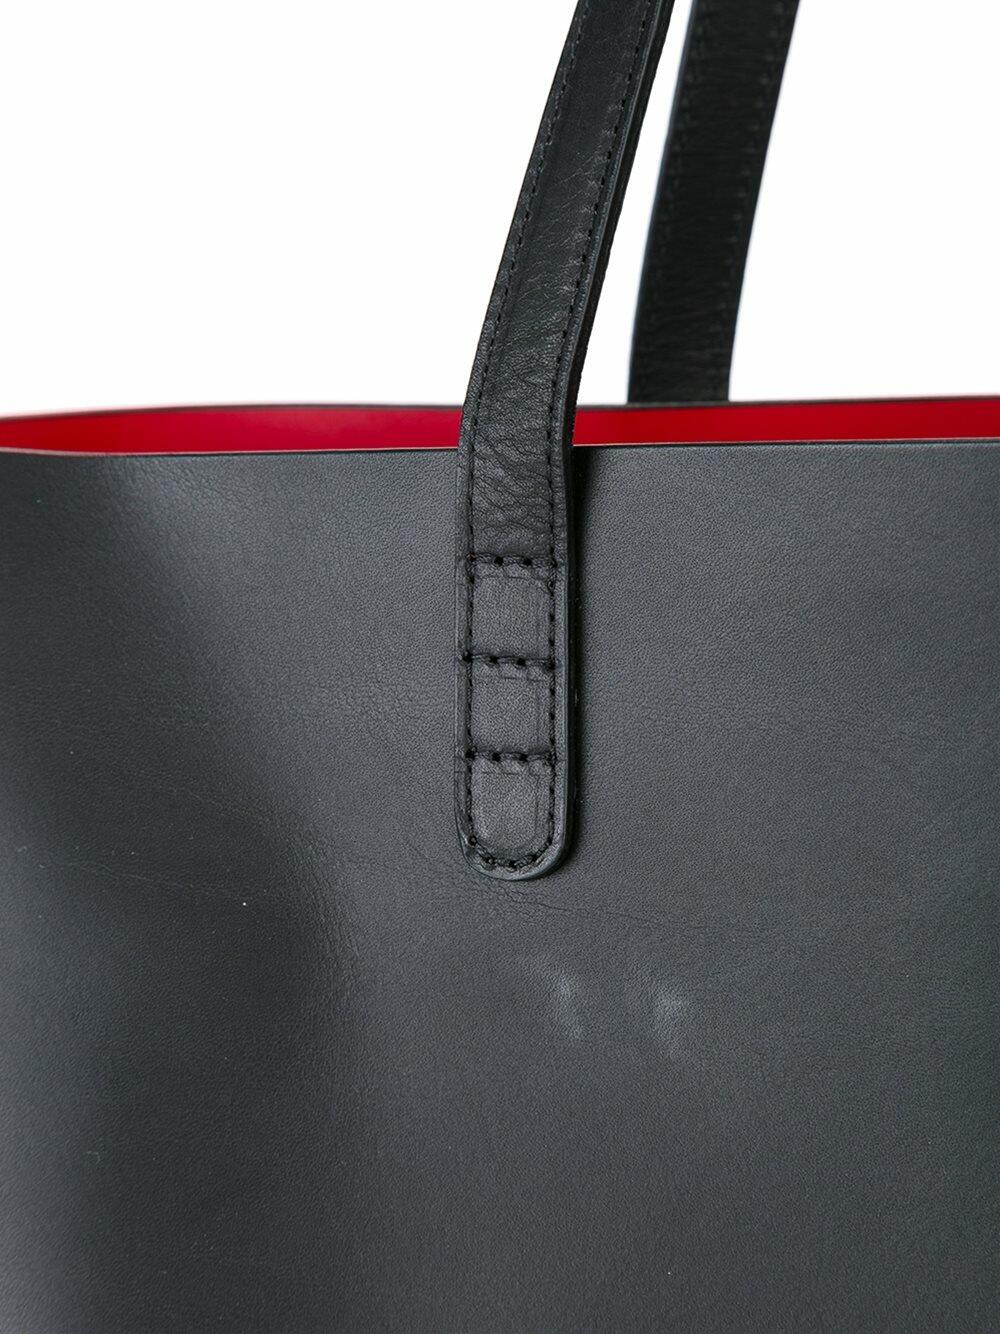 Mansur Gavriel Red-lined Large Leather Tote Bag in Black